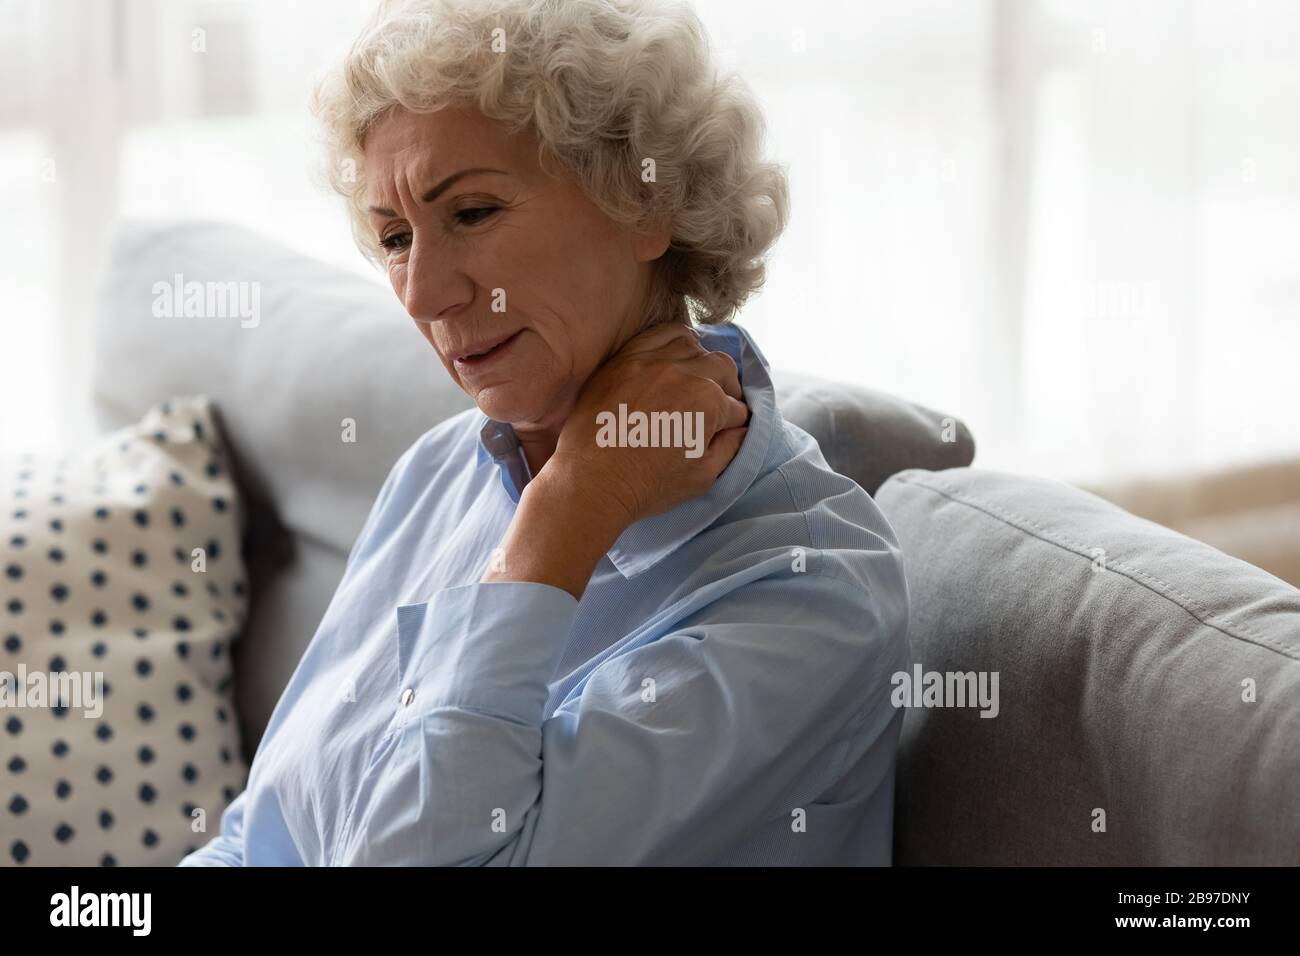 La vecchia signora malata siede sul divano soffrendo dal dolore al collo Foto Stock